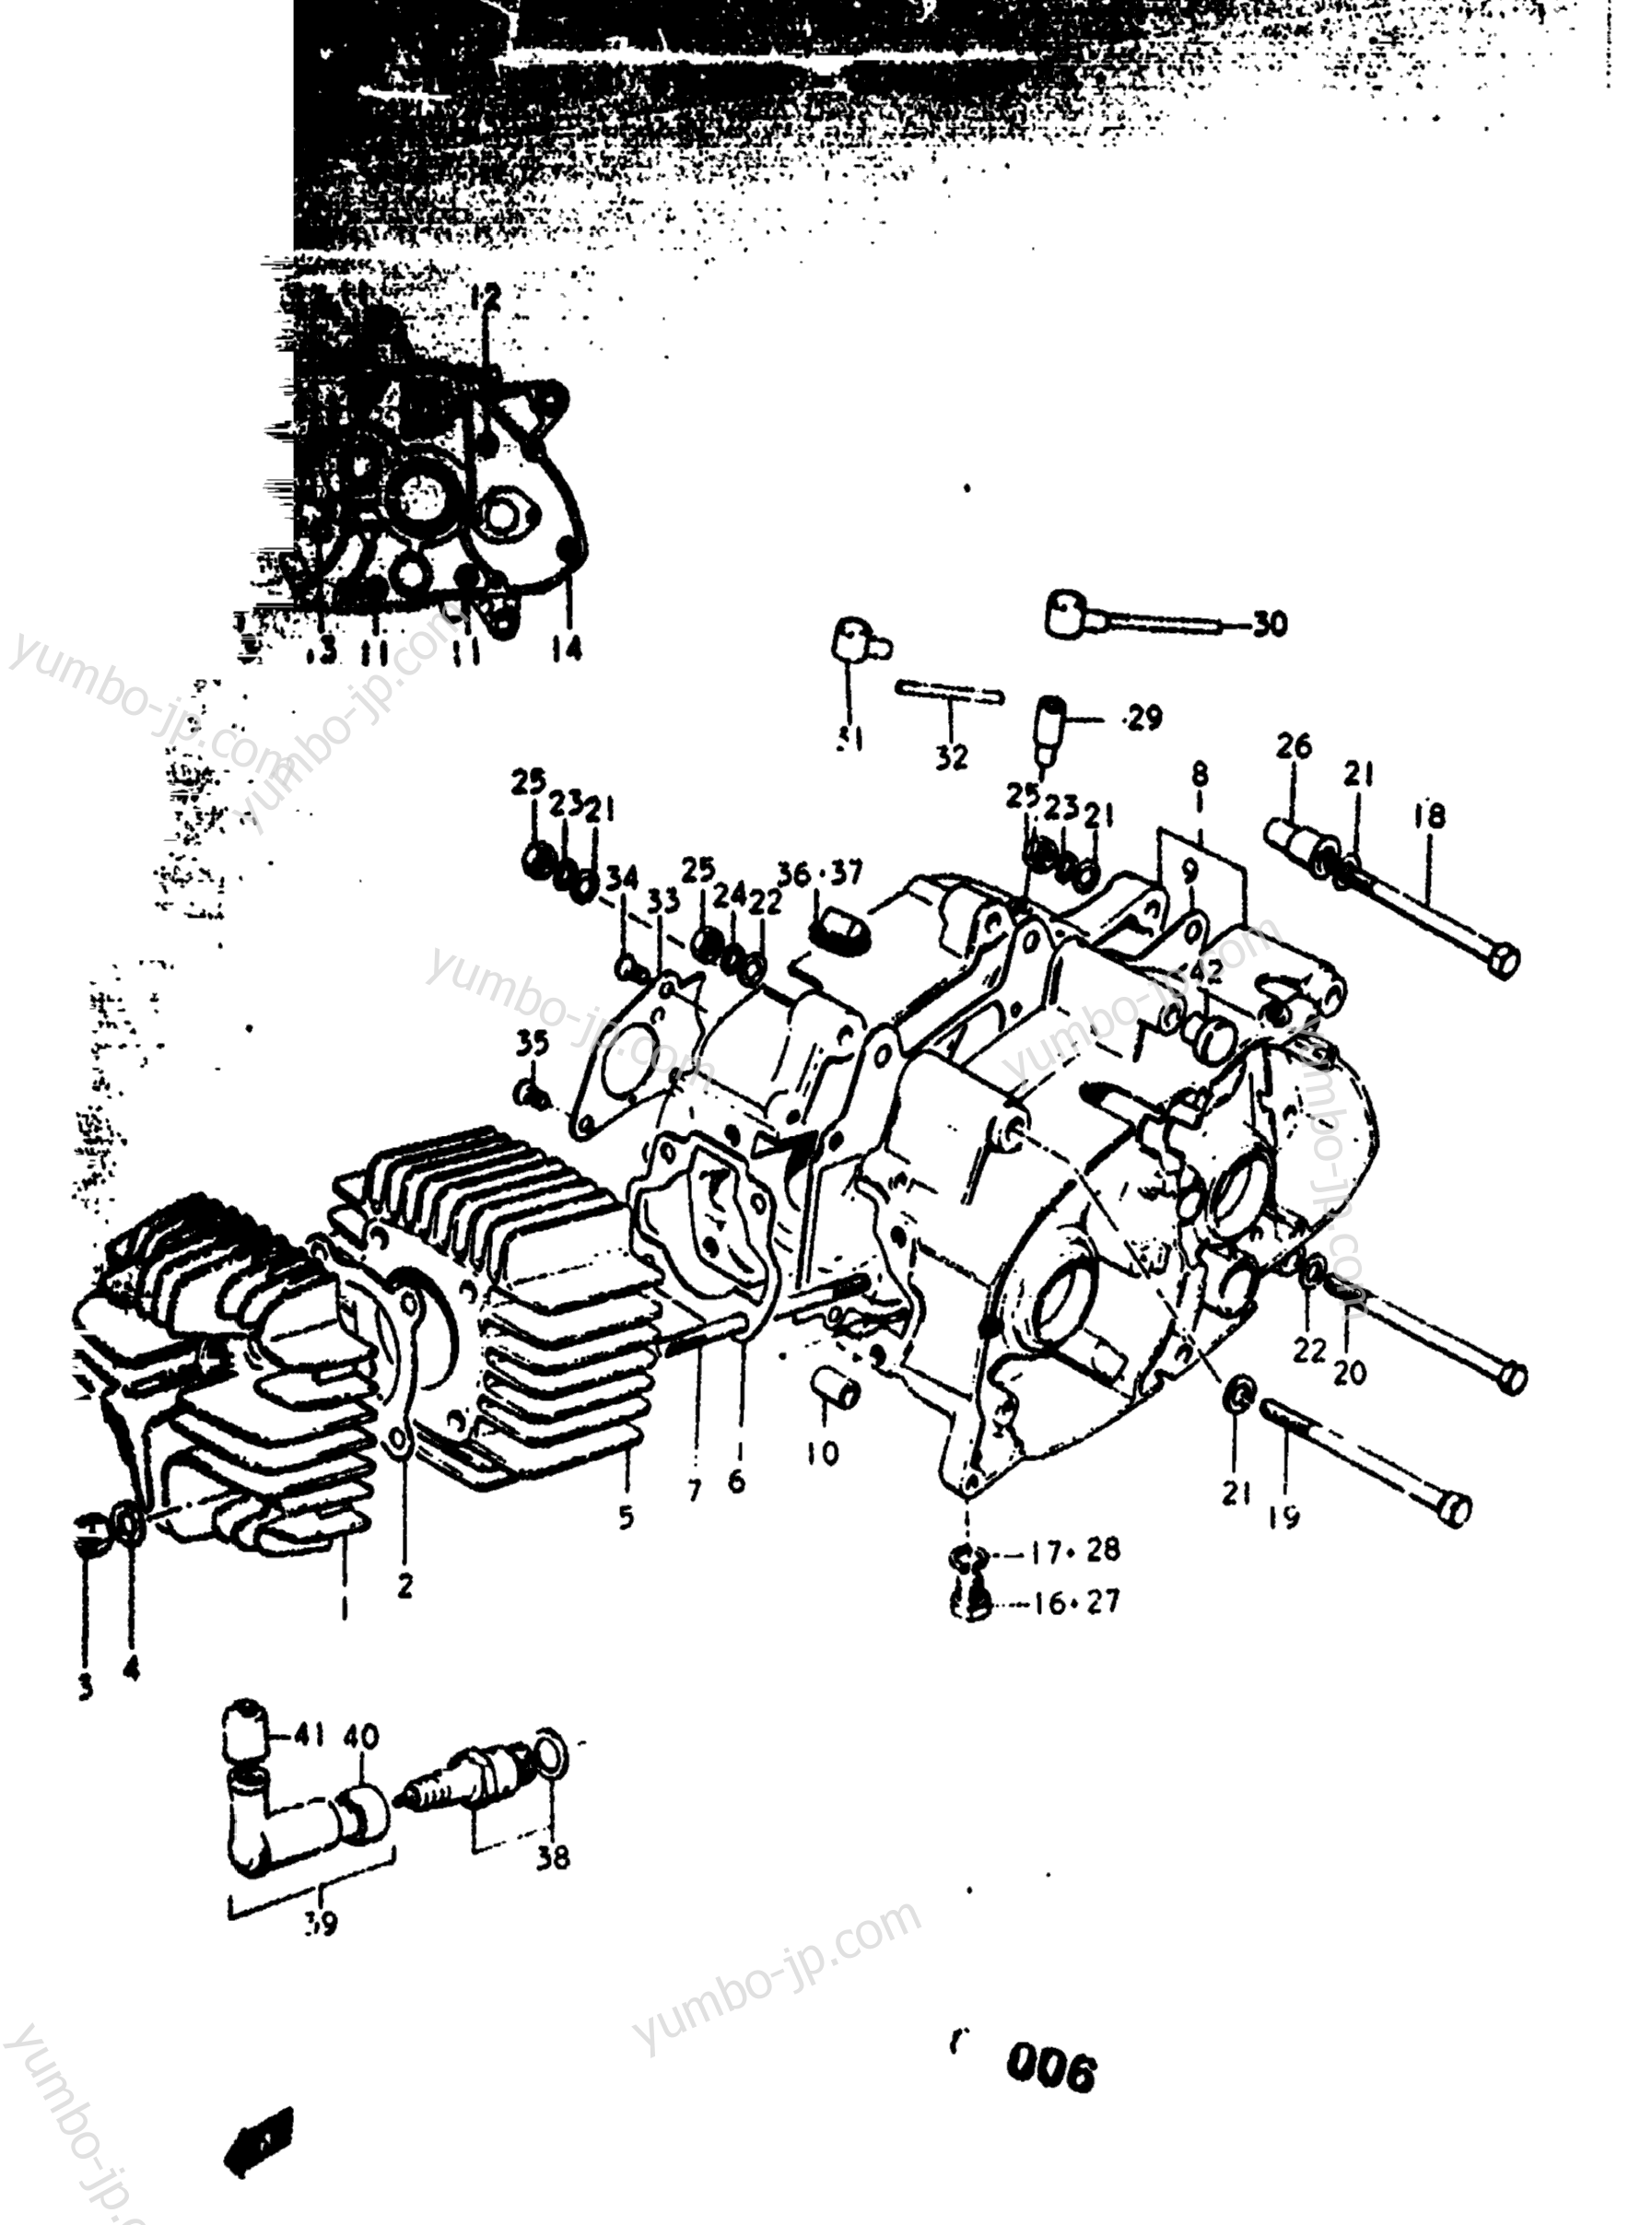 Cylinder - Crankcase for motorcycles SUZUKI RV90 1973 year